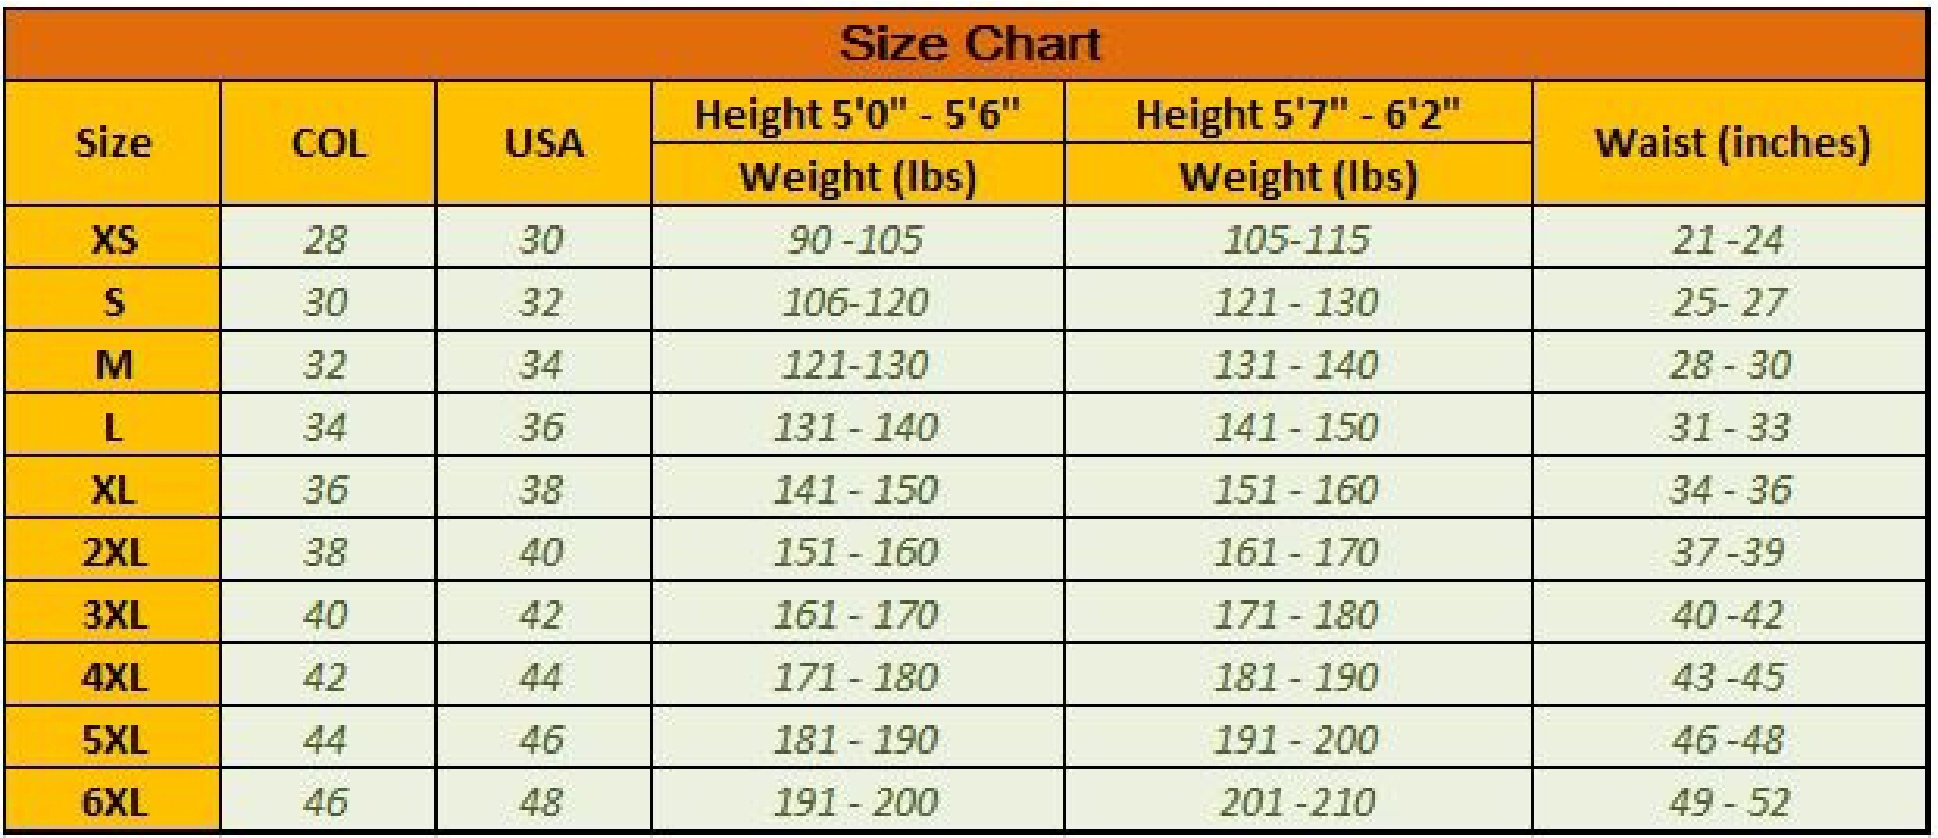 Waist Size Vs Height Chart